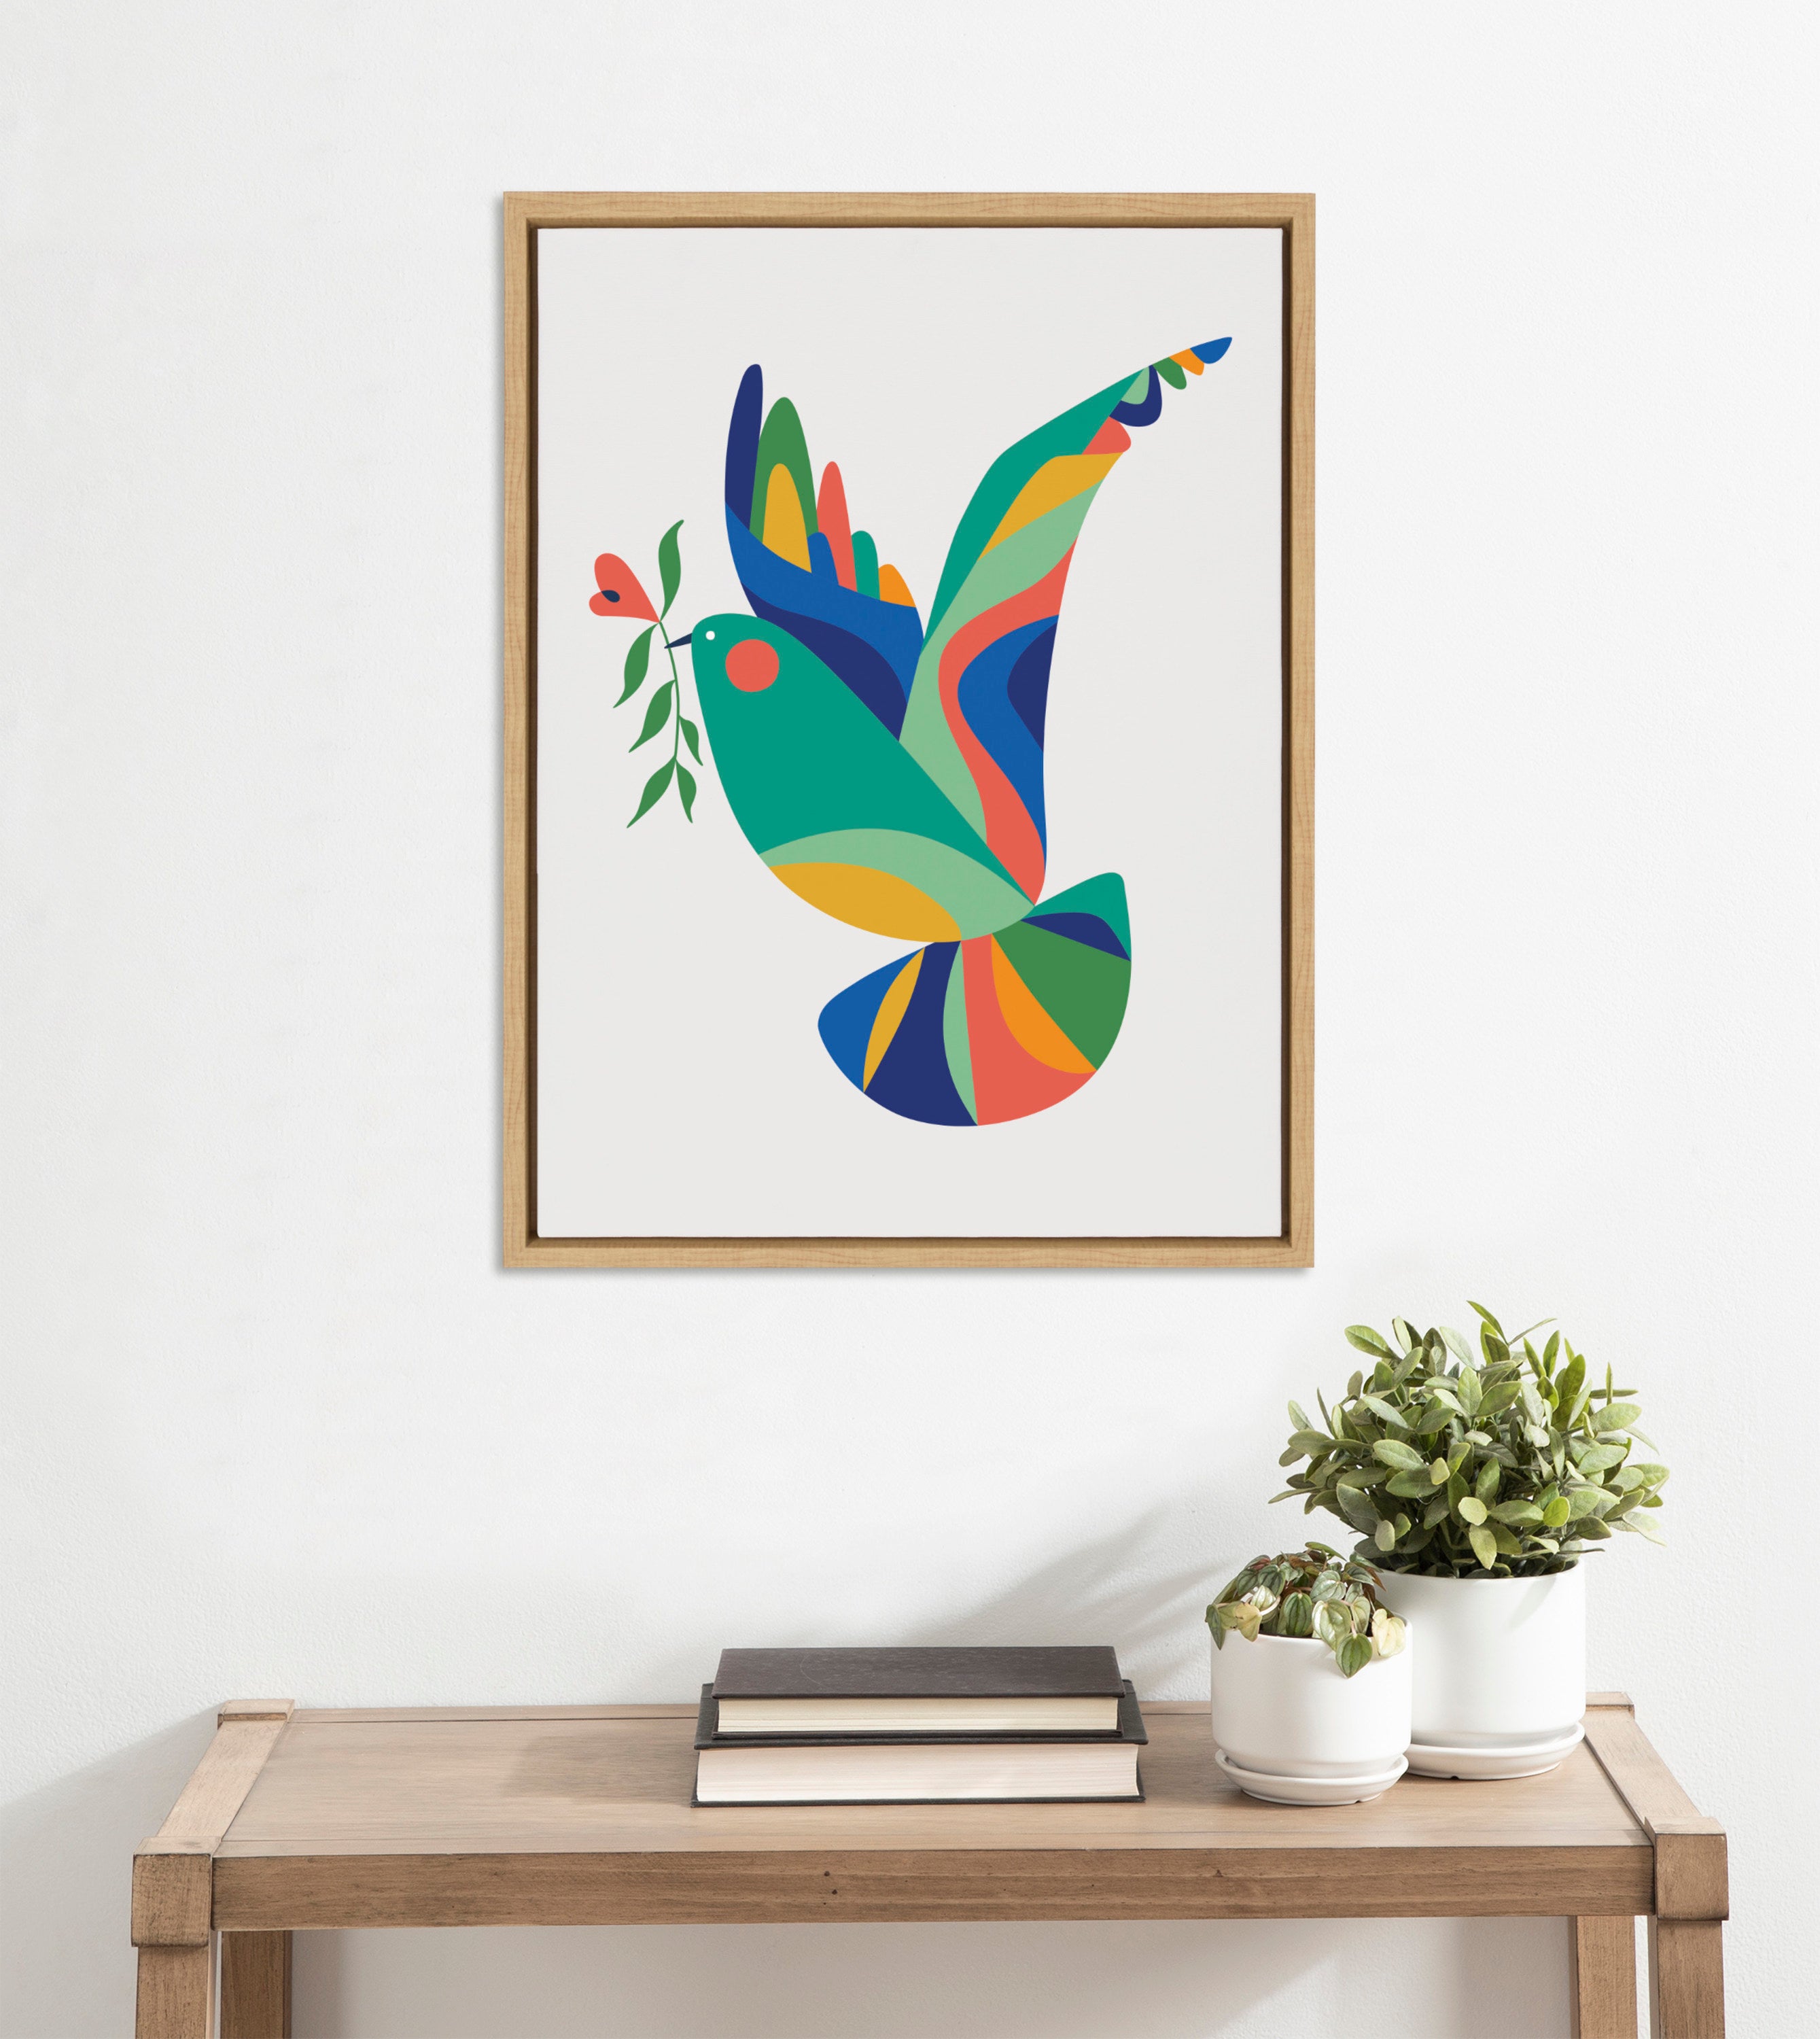 Sylvie Bird of Peace Framed Canvas by Rachel Lee of My Dream Wall